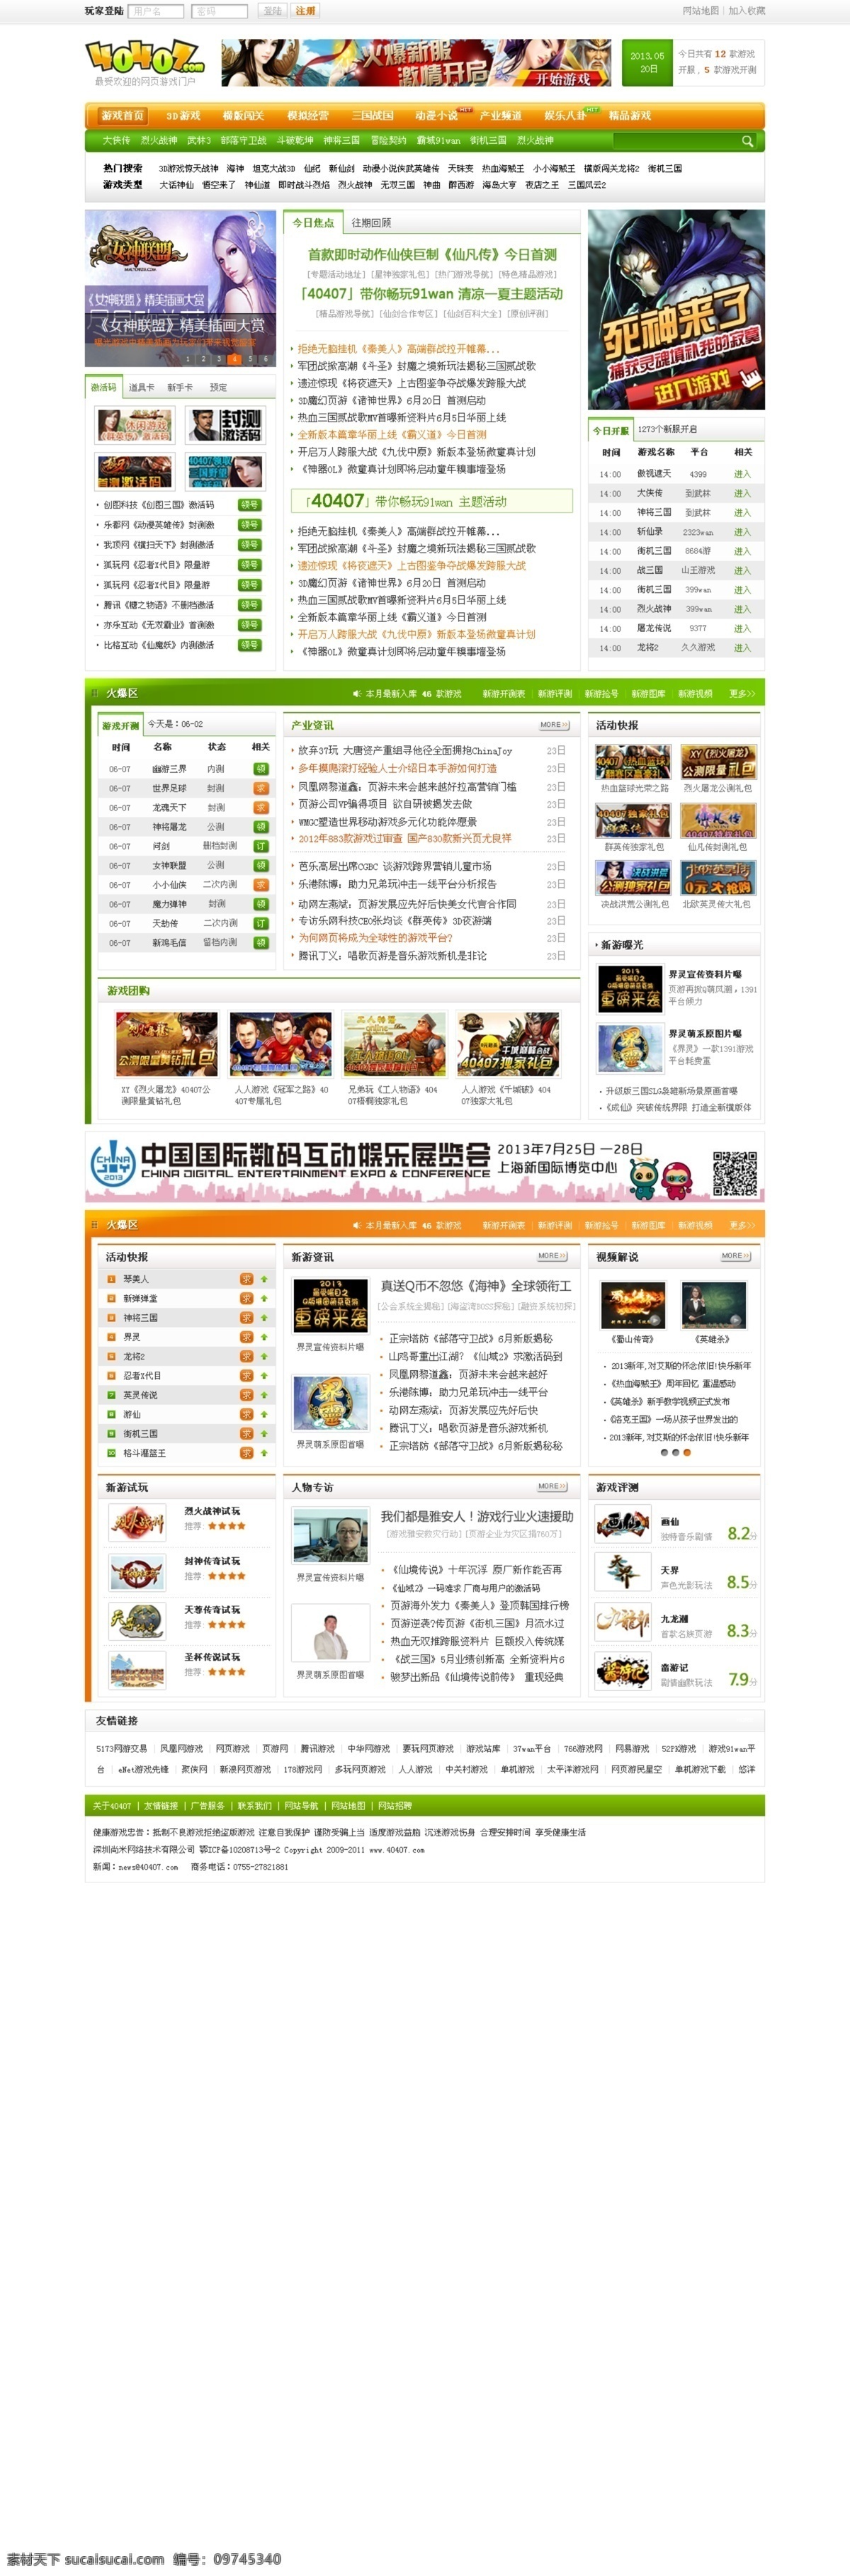 门户 玩游戏 网页模板 游戏 游戏网站 源文件 中文模板 模板下载 游戏门户 门户站 网页素材